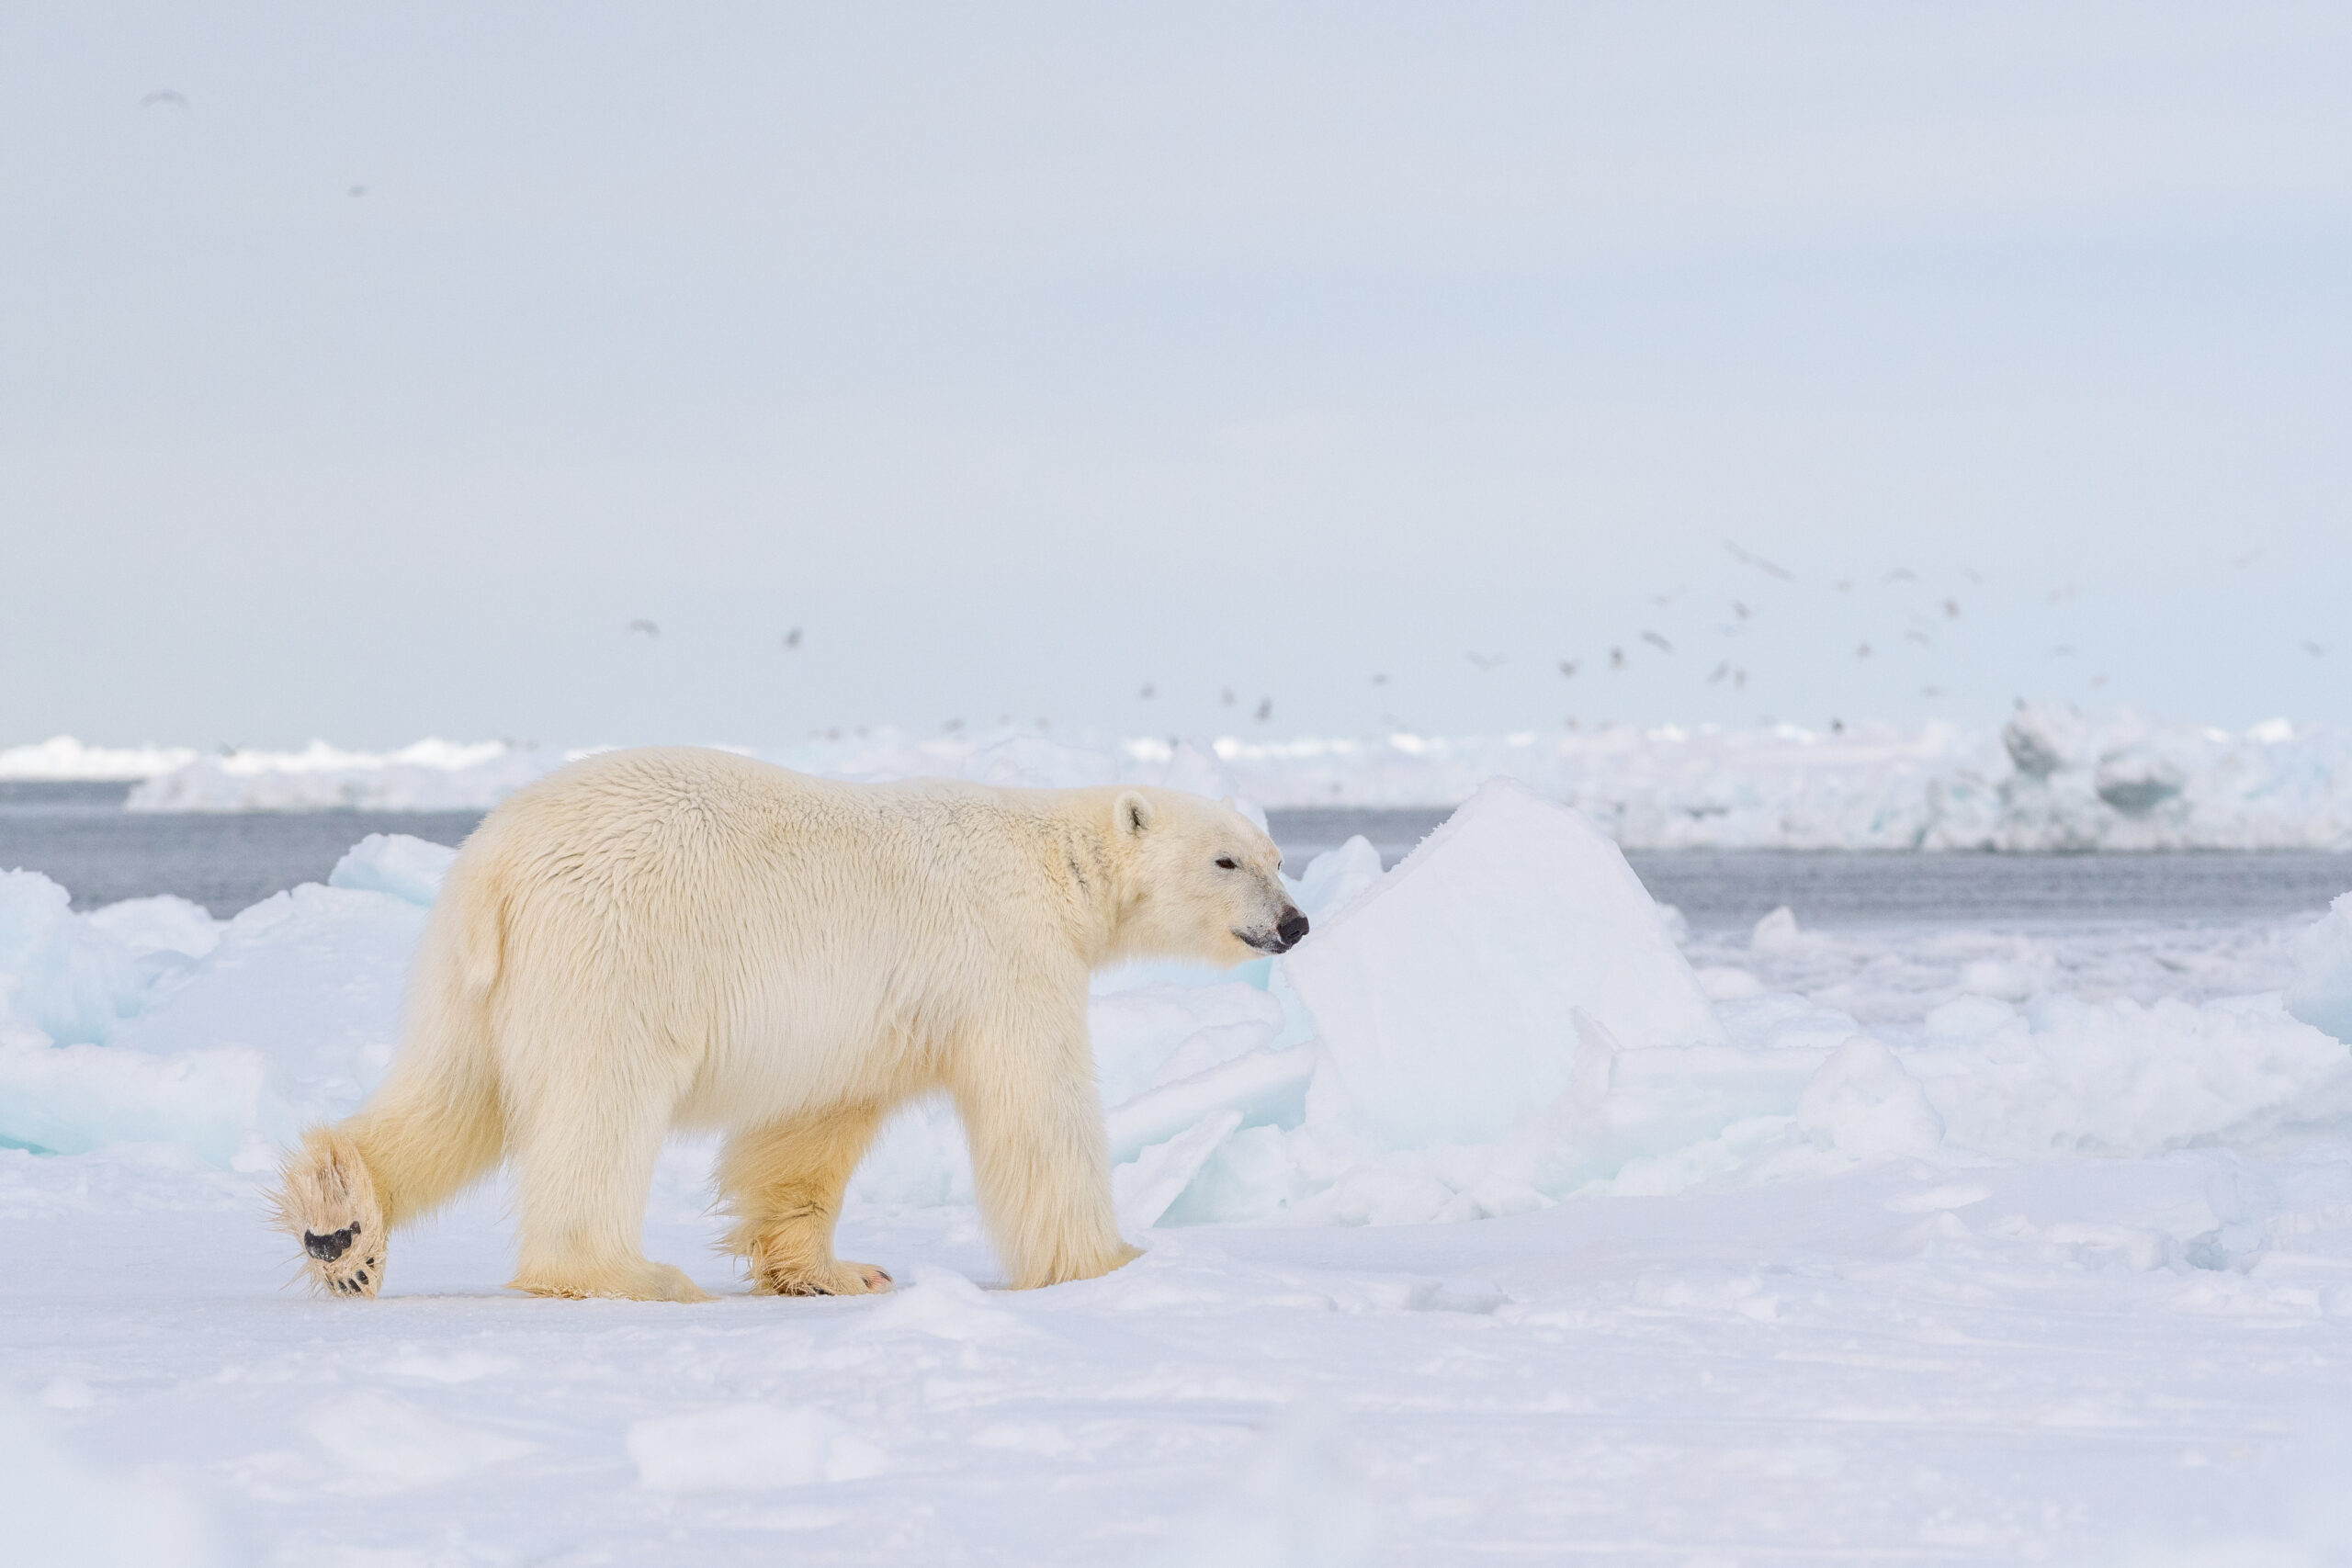 Polar bear walking on a snowy landscape